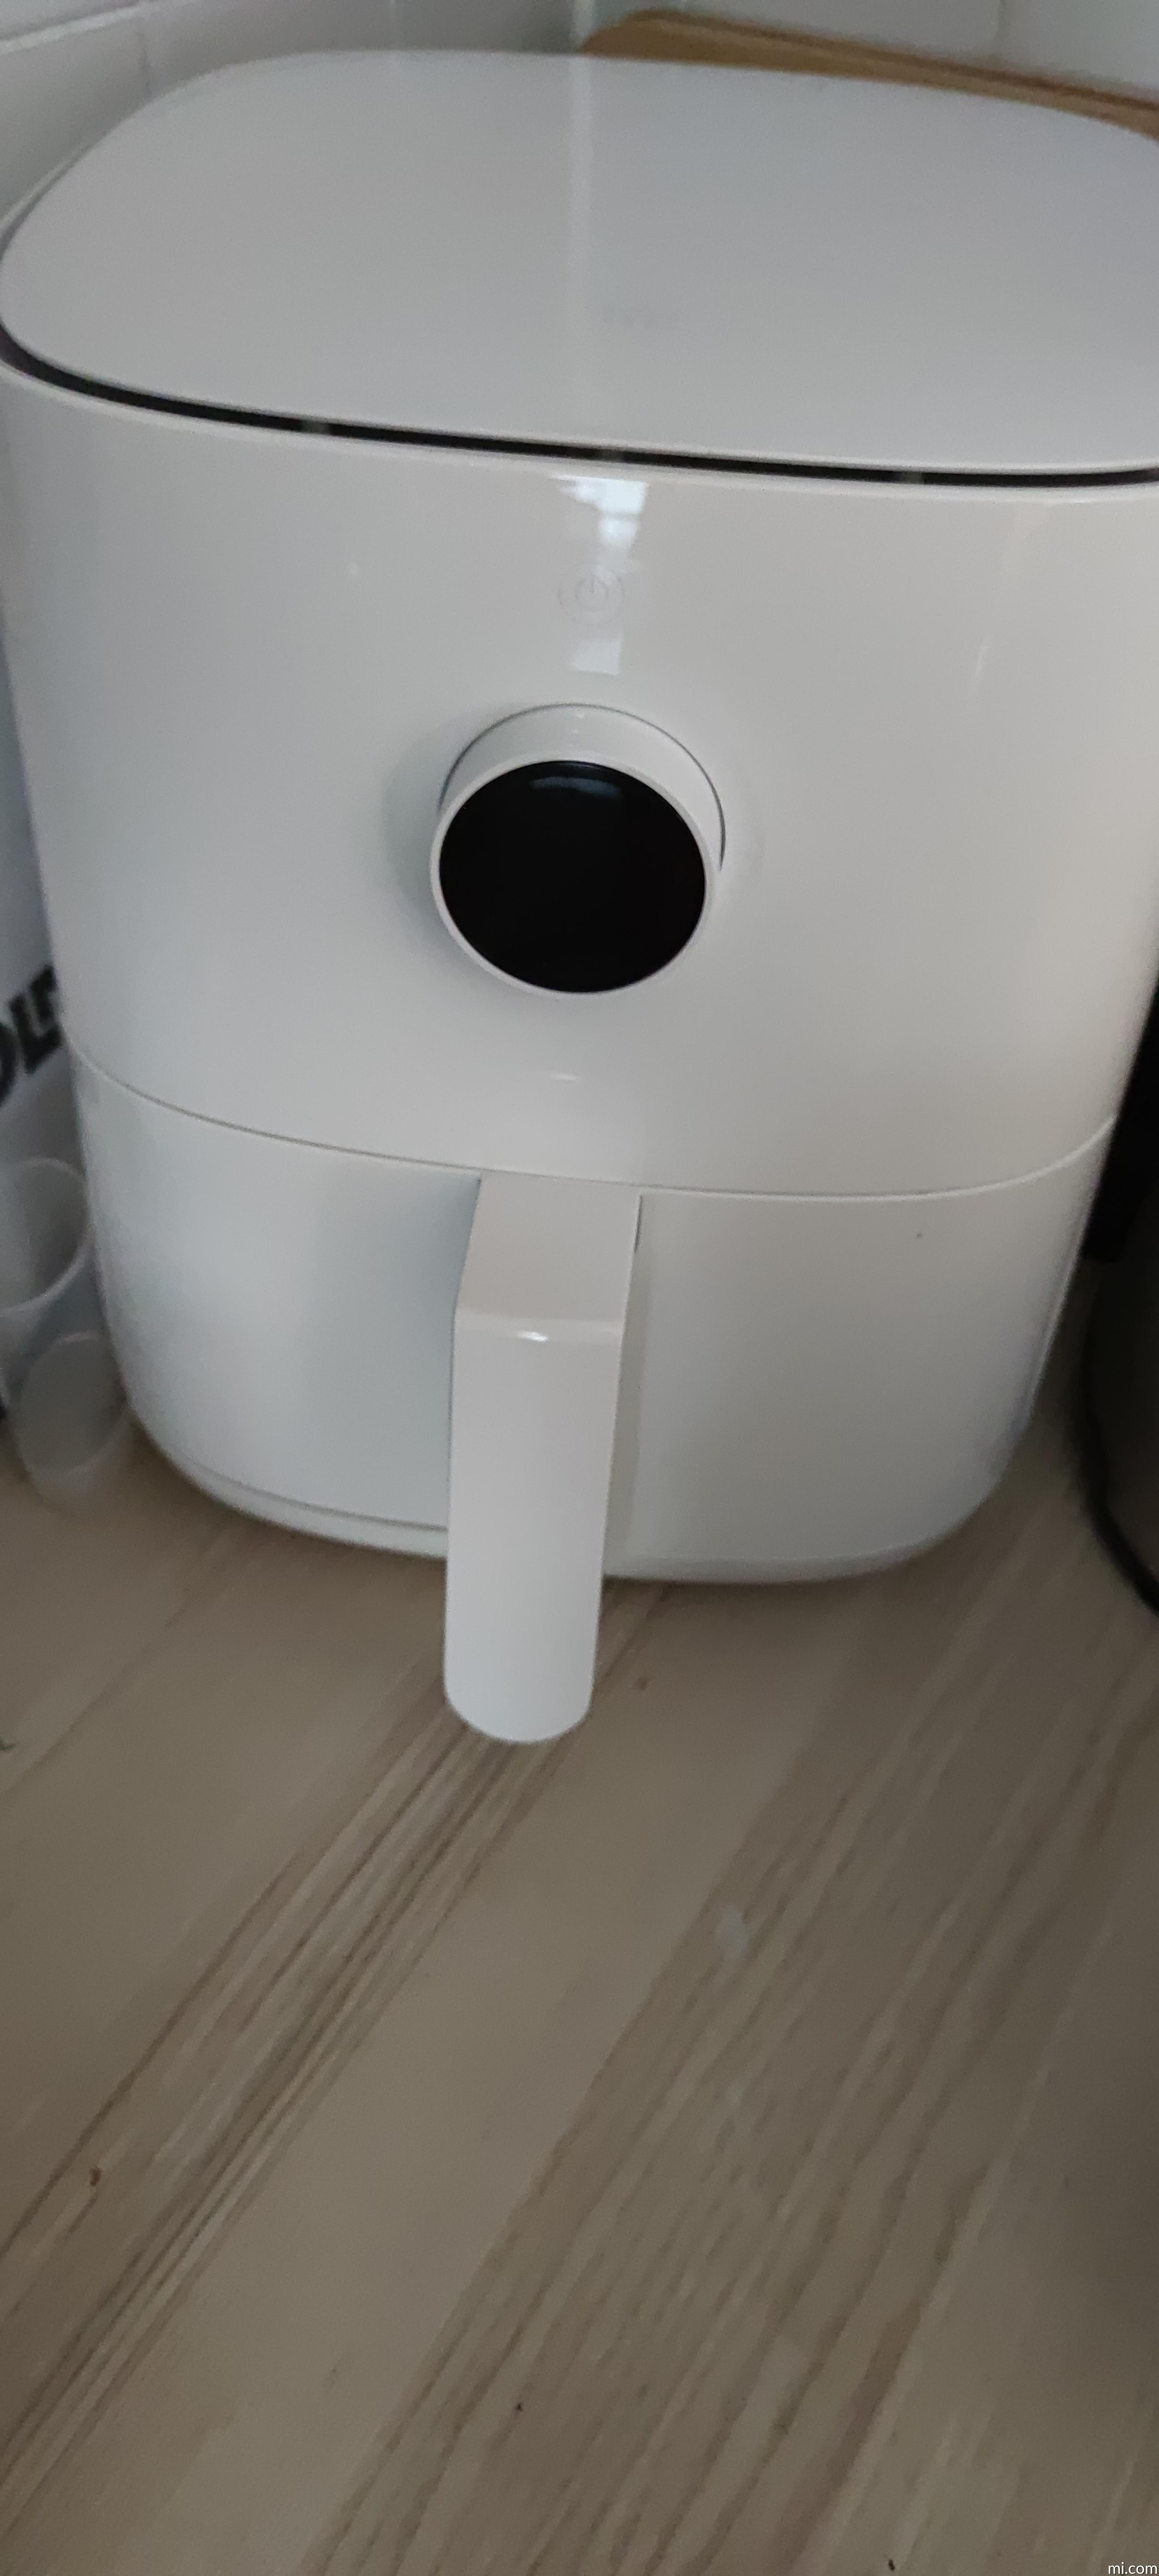 Mi Smart Air Fryer 3.5L | Xiaomi Deutschland